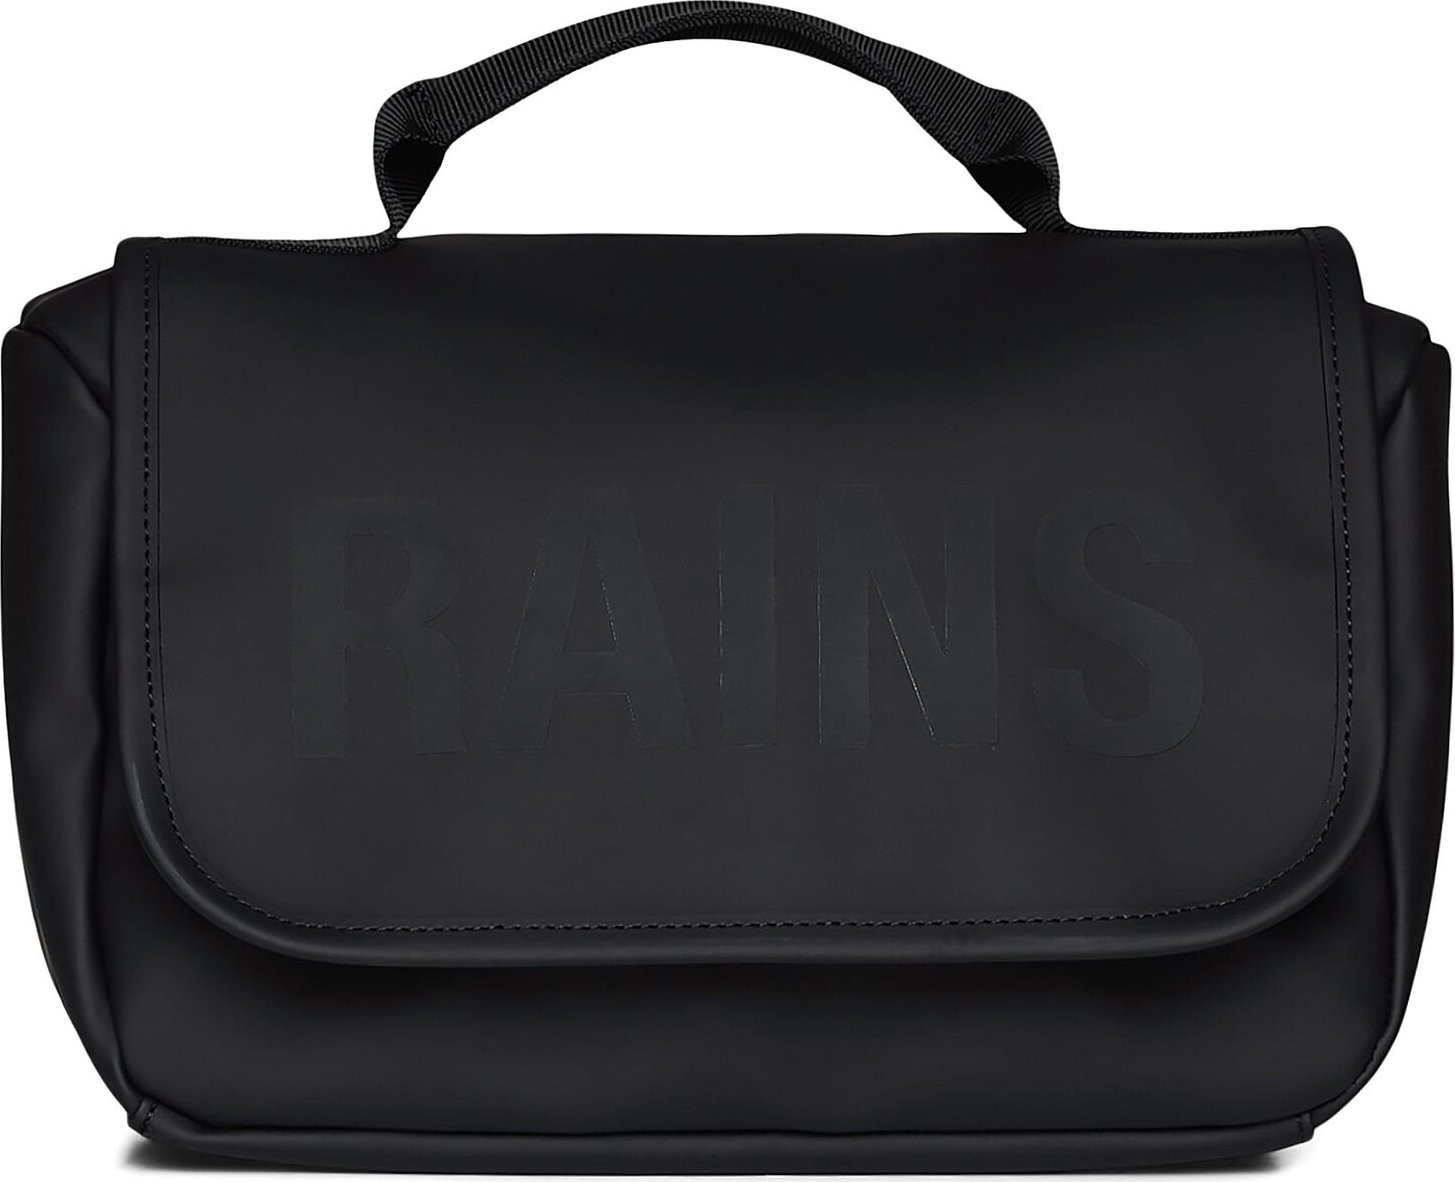 Kosmetický kufřík Rains Texel Wash Bag W1 16310 Black